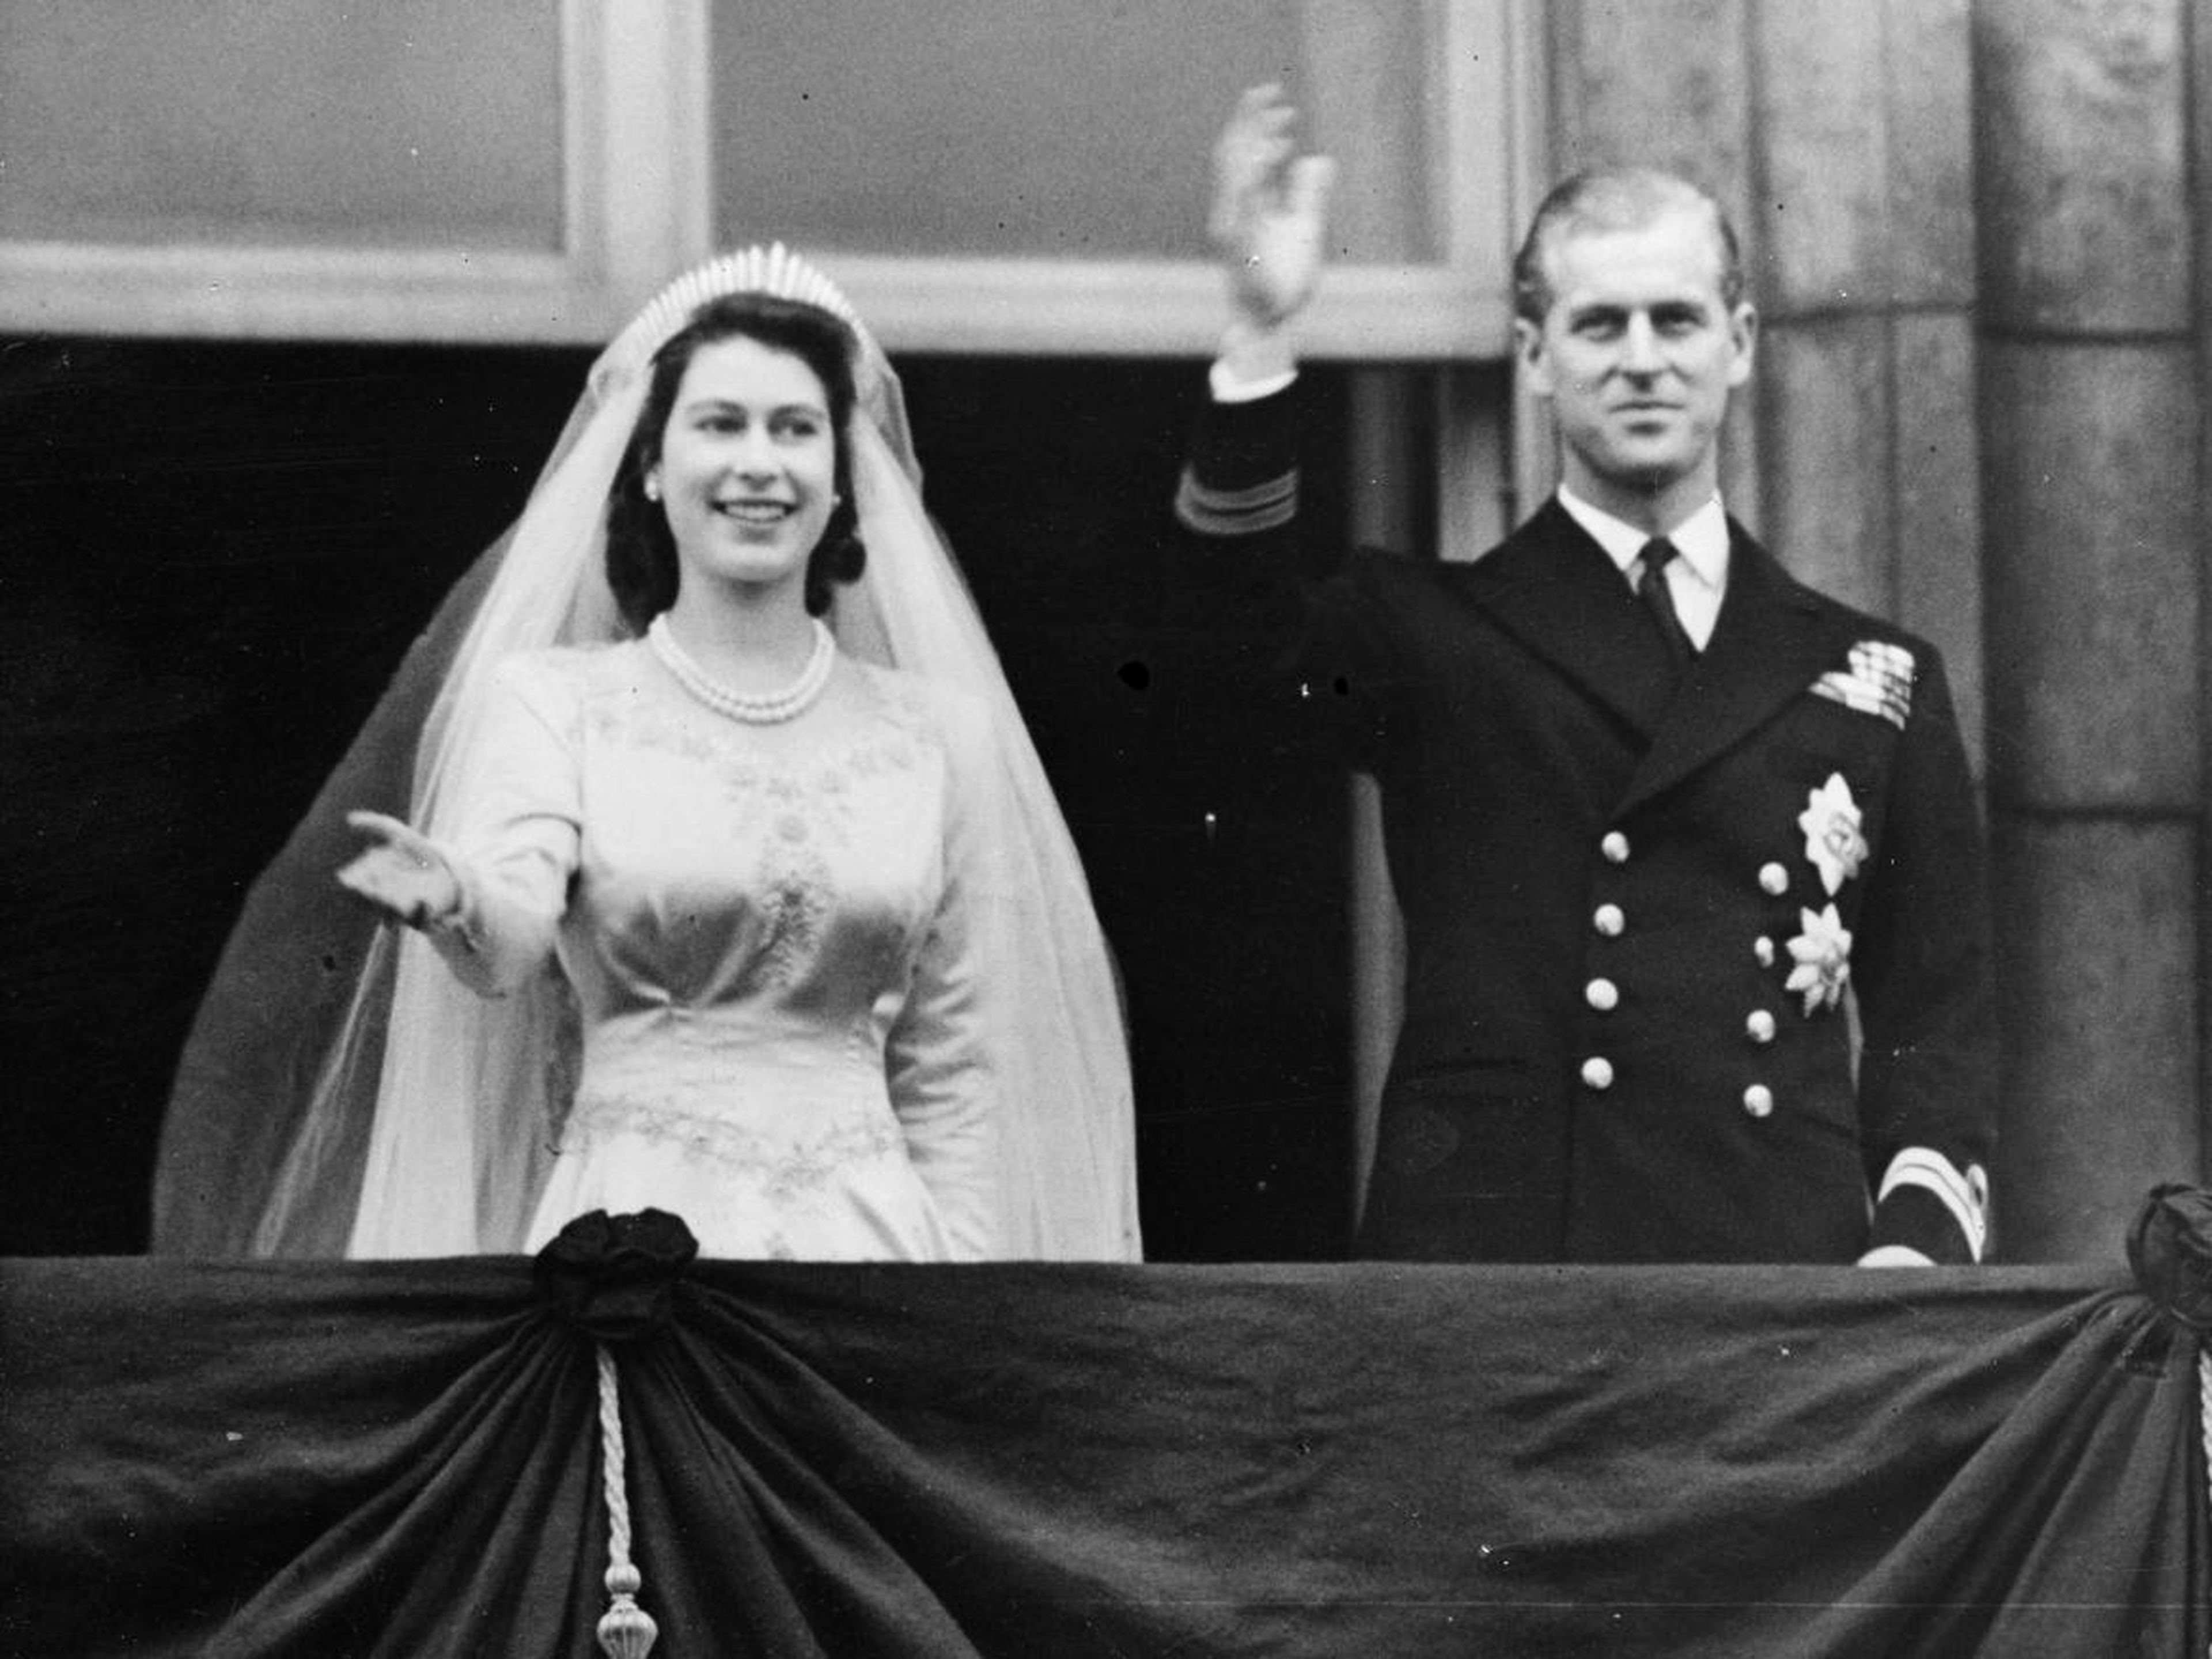 El príncipe Felipe se convirtió en miembro de la familia real británica al contraer matrimonio con la reina, la entonces princesa Isabel, el 20 de noviembre de 1947.